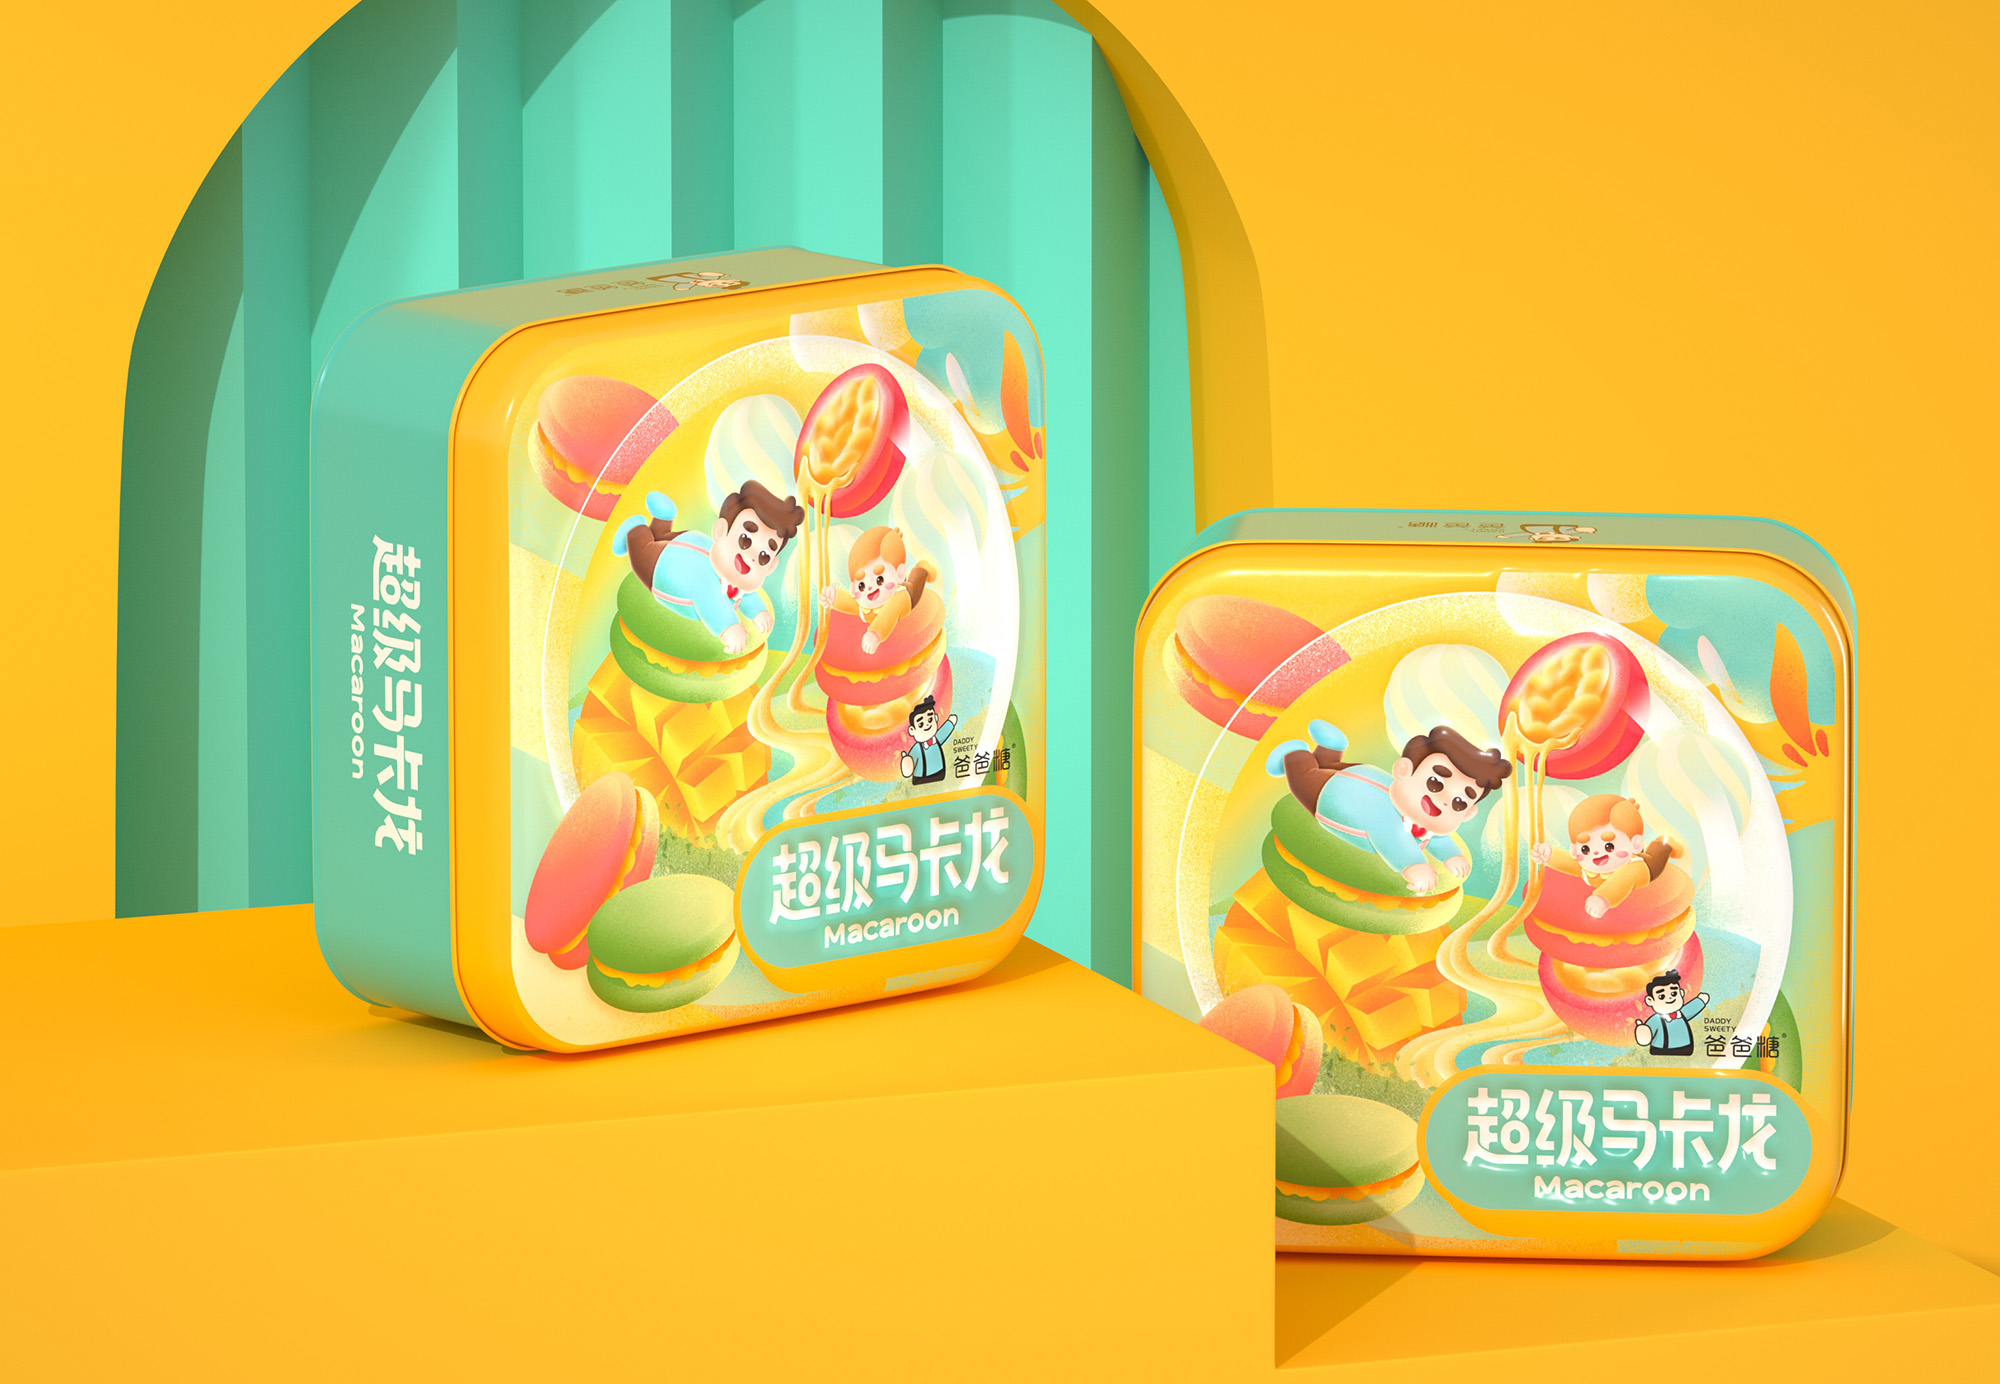 尚智×爸爸糖 | 六重奏曲奇礼盒/马卡龙食品包装设计